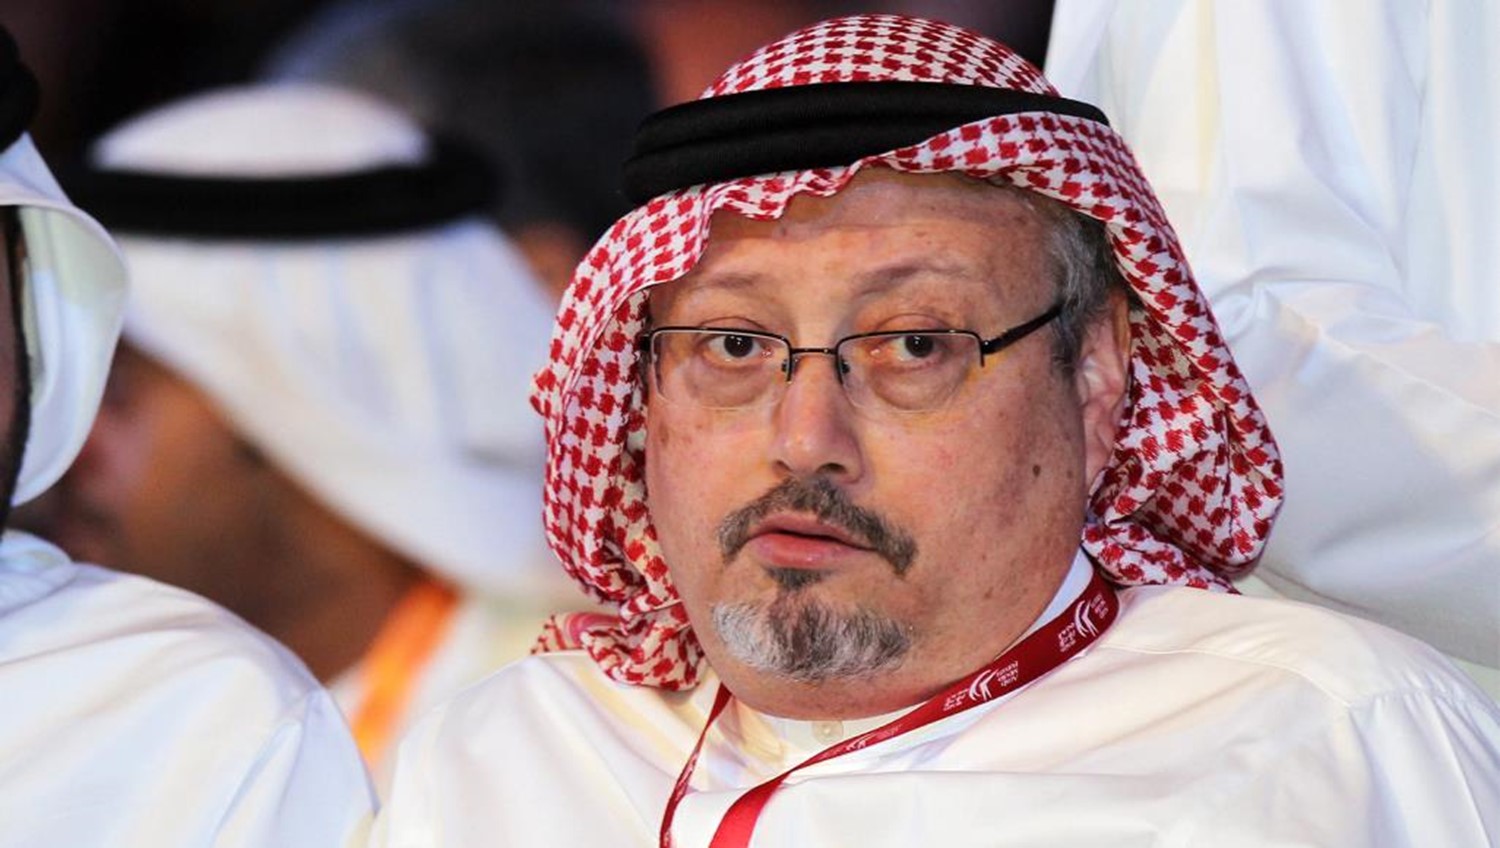 العفو الدولية تعلق بشأن إعلان الرياض وفاة خاشقجي